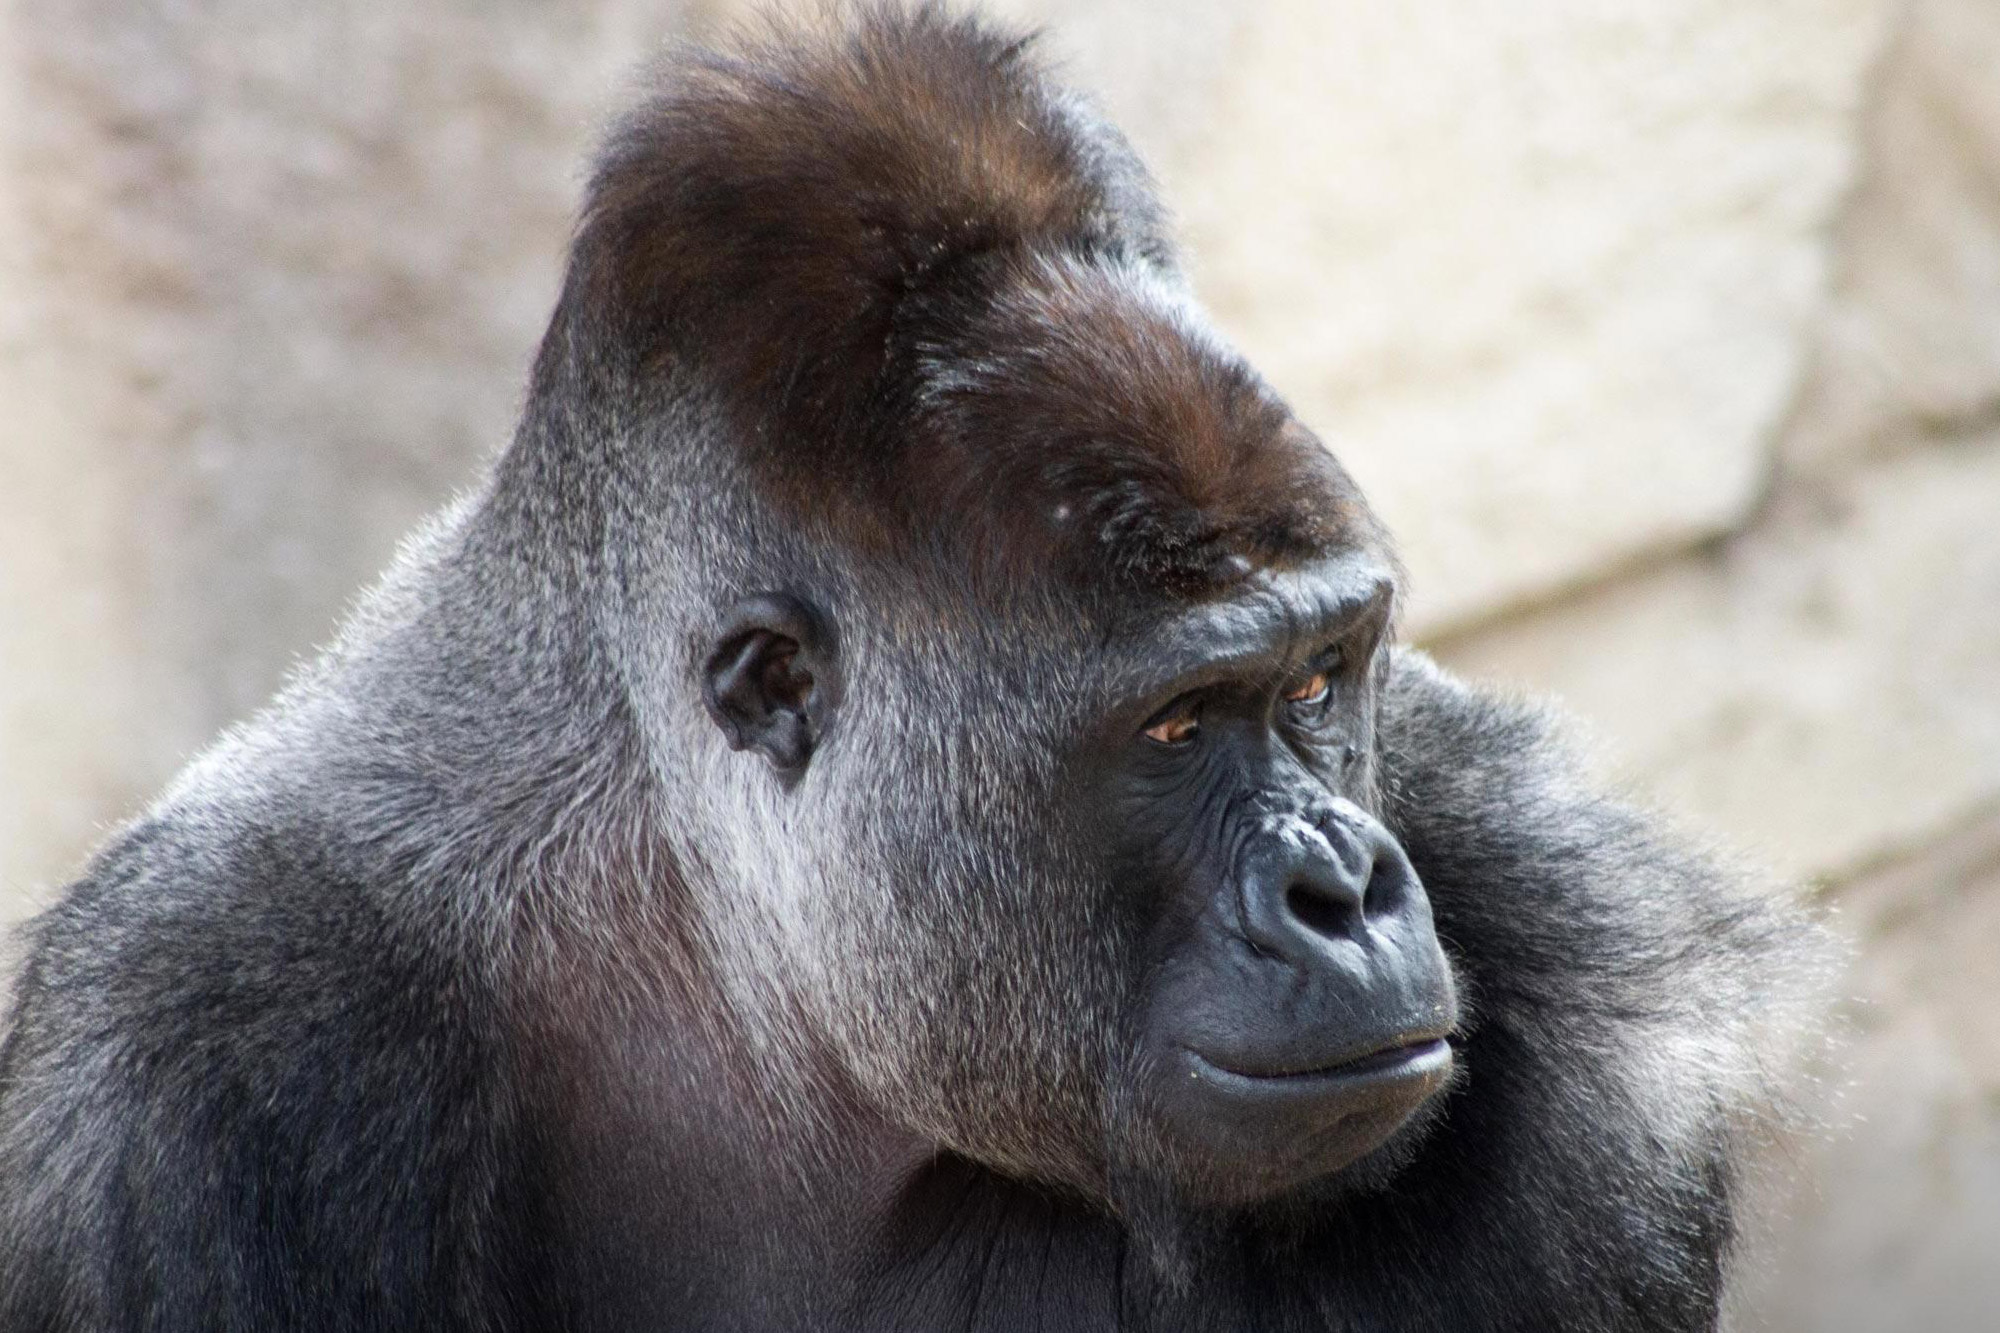 Gorilla at Taronga Zoo